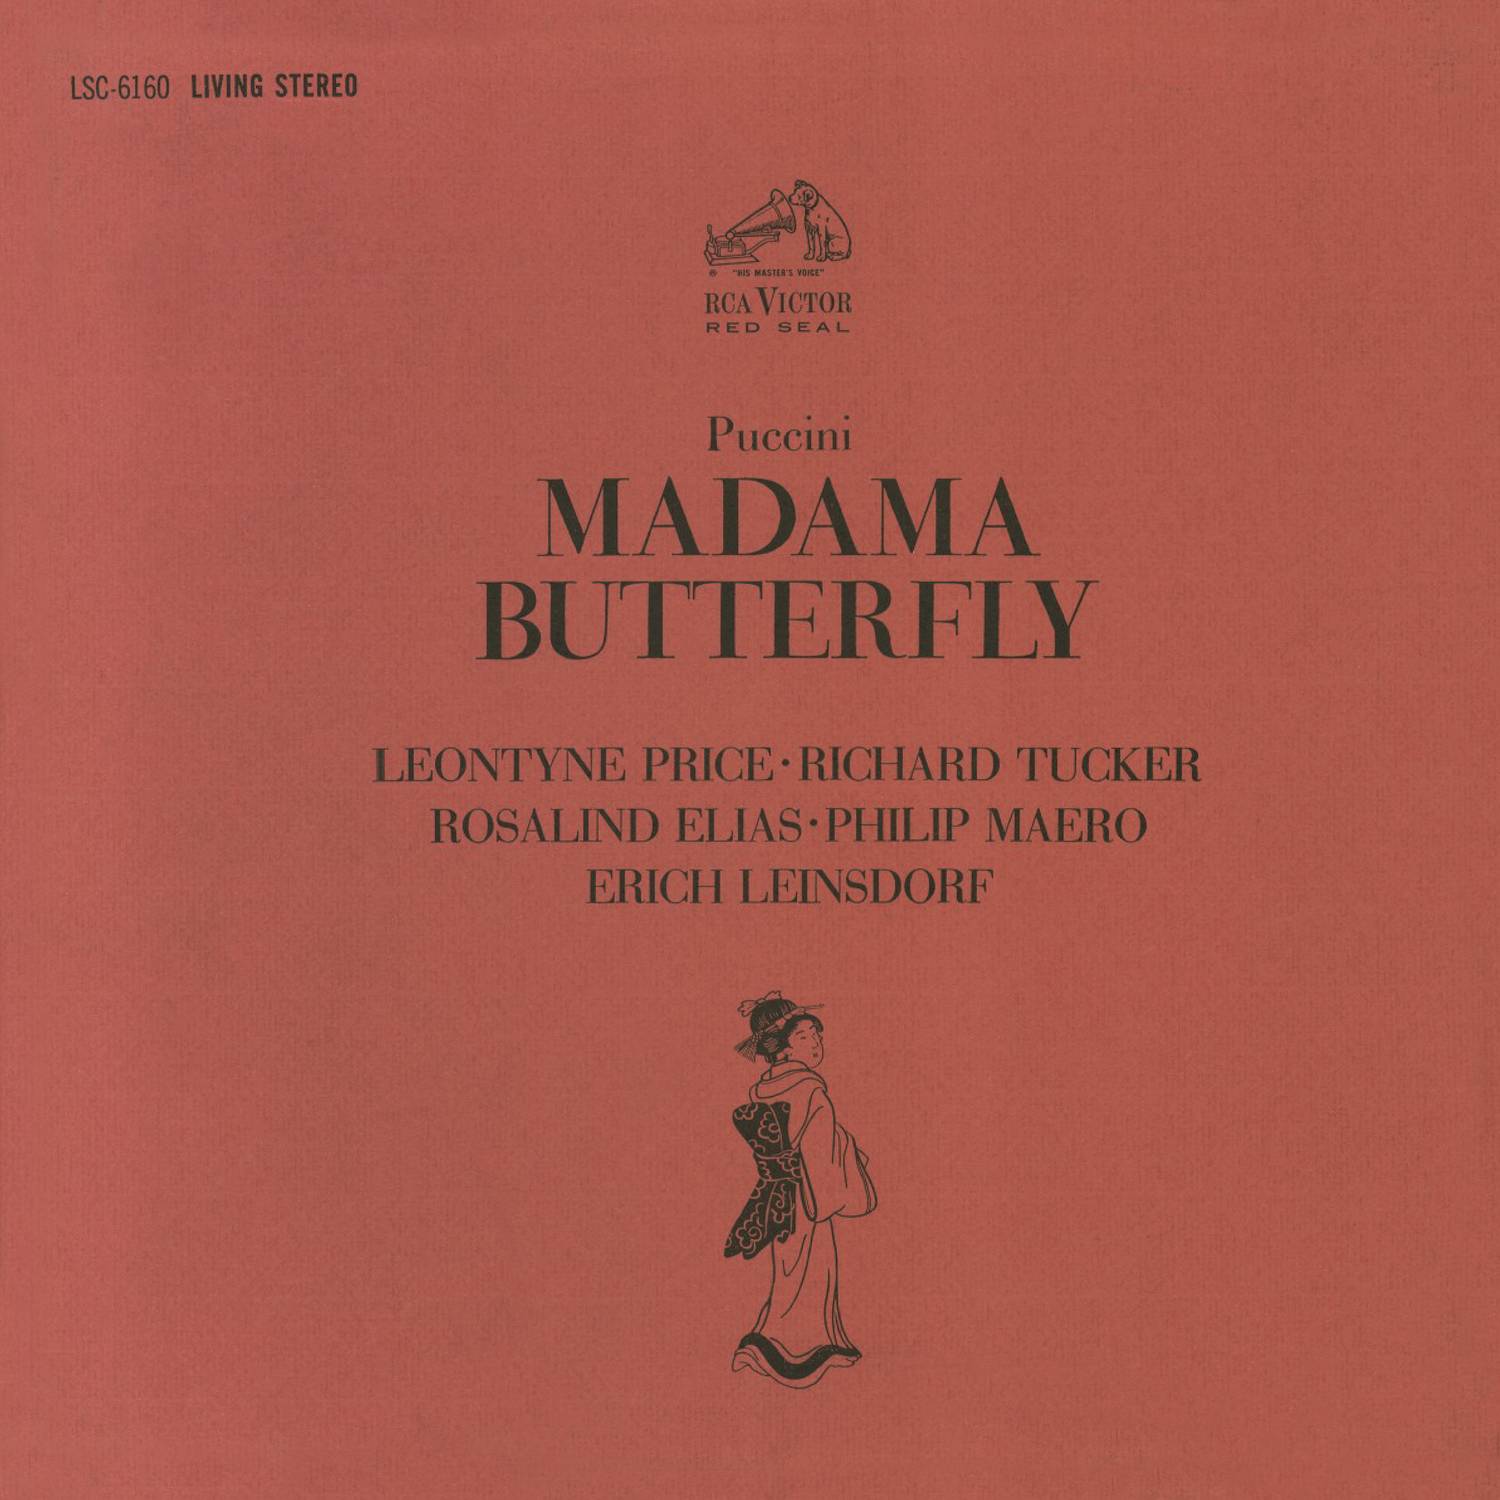 Madama Butterfly (Remastered): Act I - Tutti zitti!